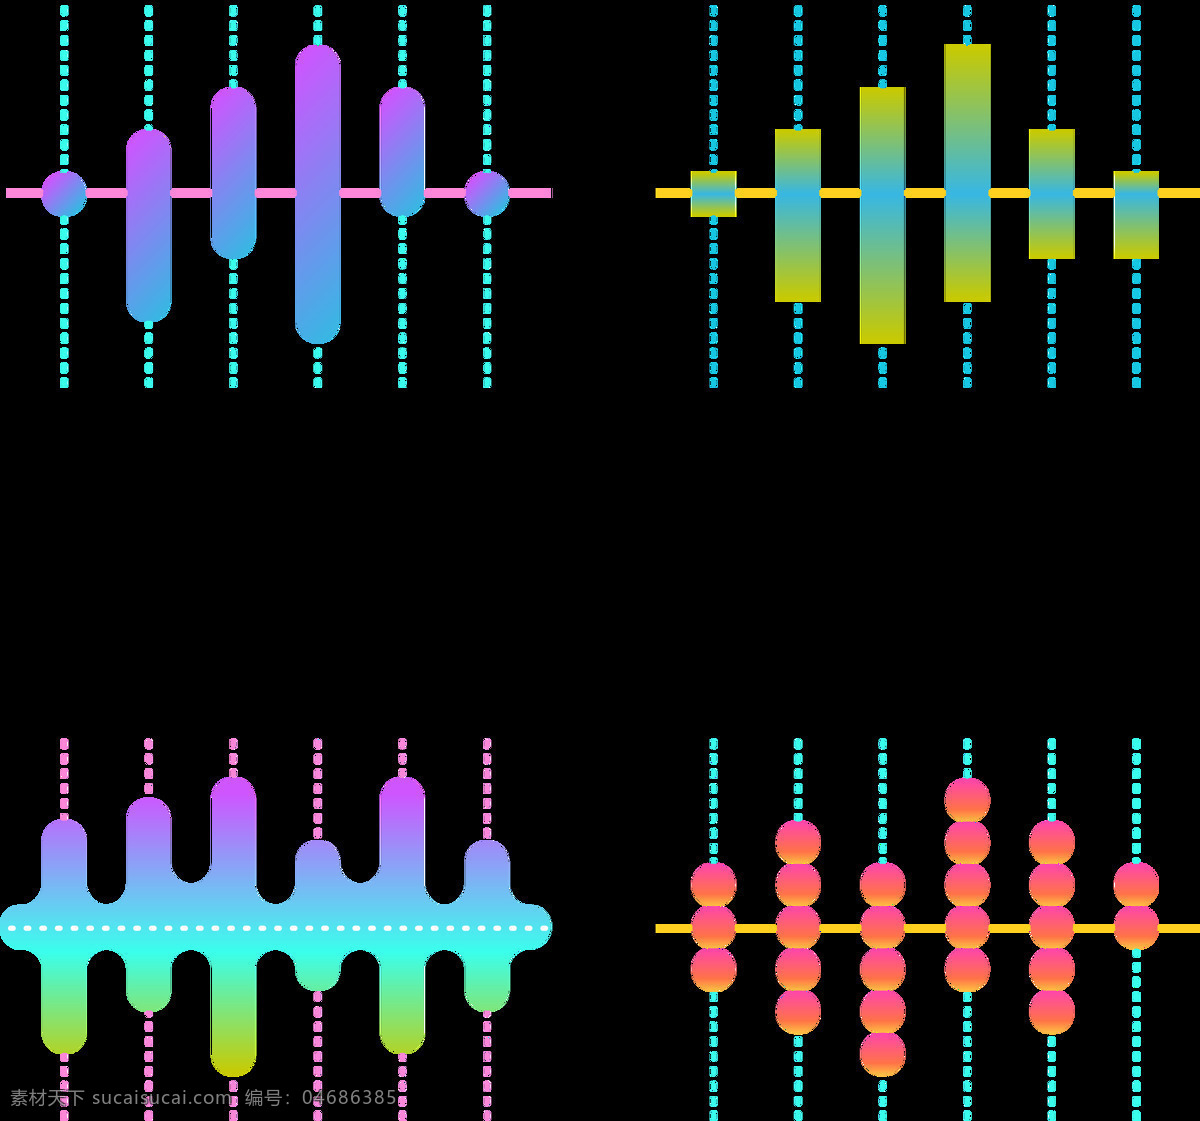 彩色 抽象 声波 图案 免 抠 透明 图 层 音乐声波 声音波 均衡器 曲线 音量 显示 背景 音乐素材 线条 声波图形 声音波形 声波素材 音波线条 素材声音 音乐符号